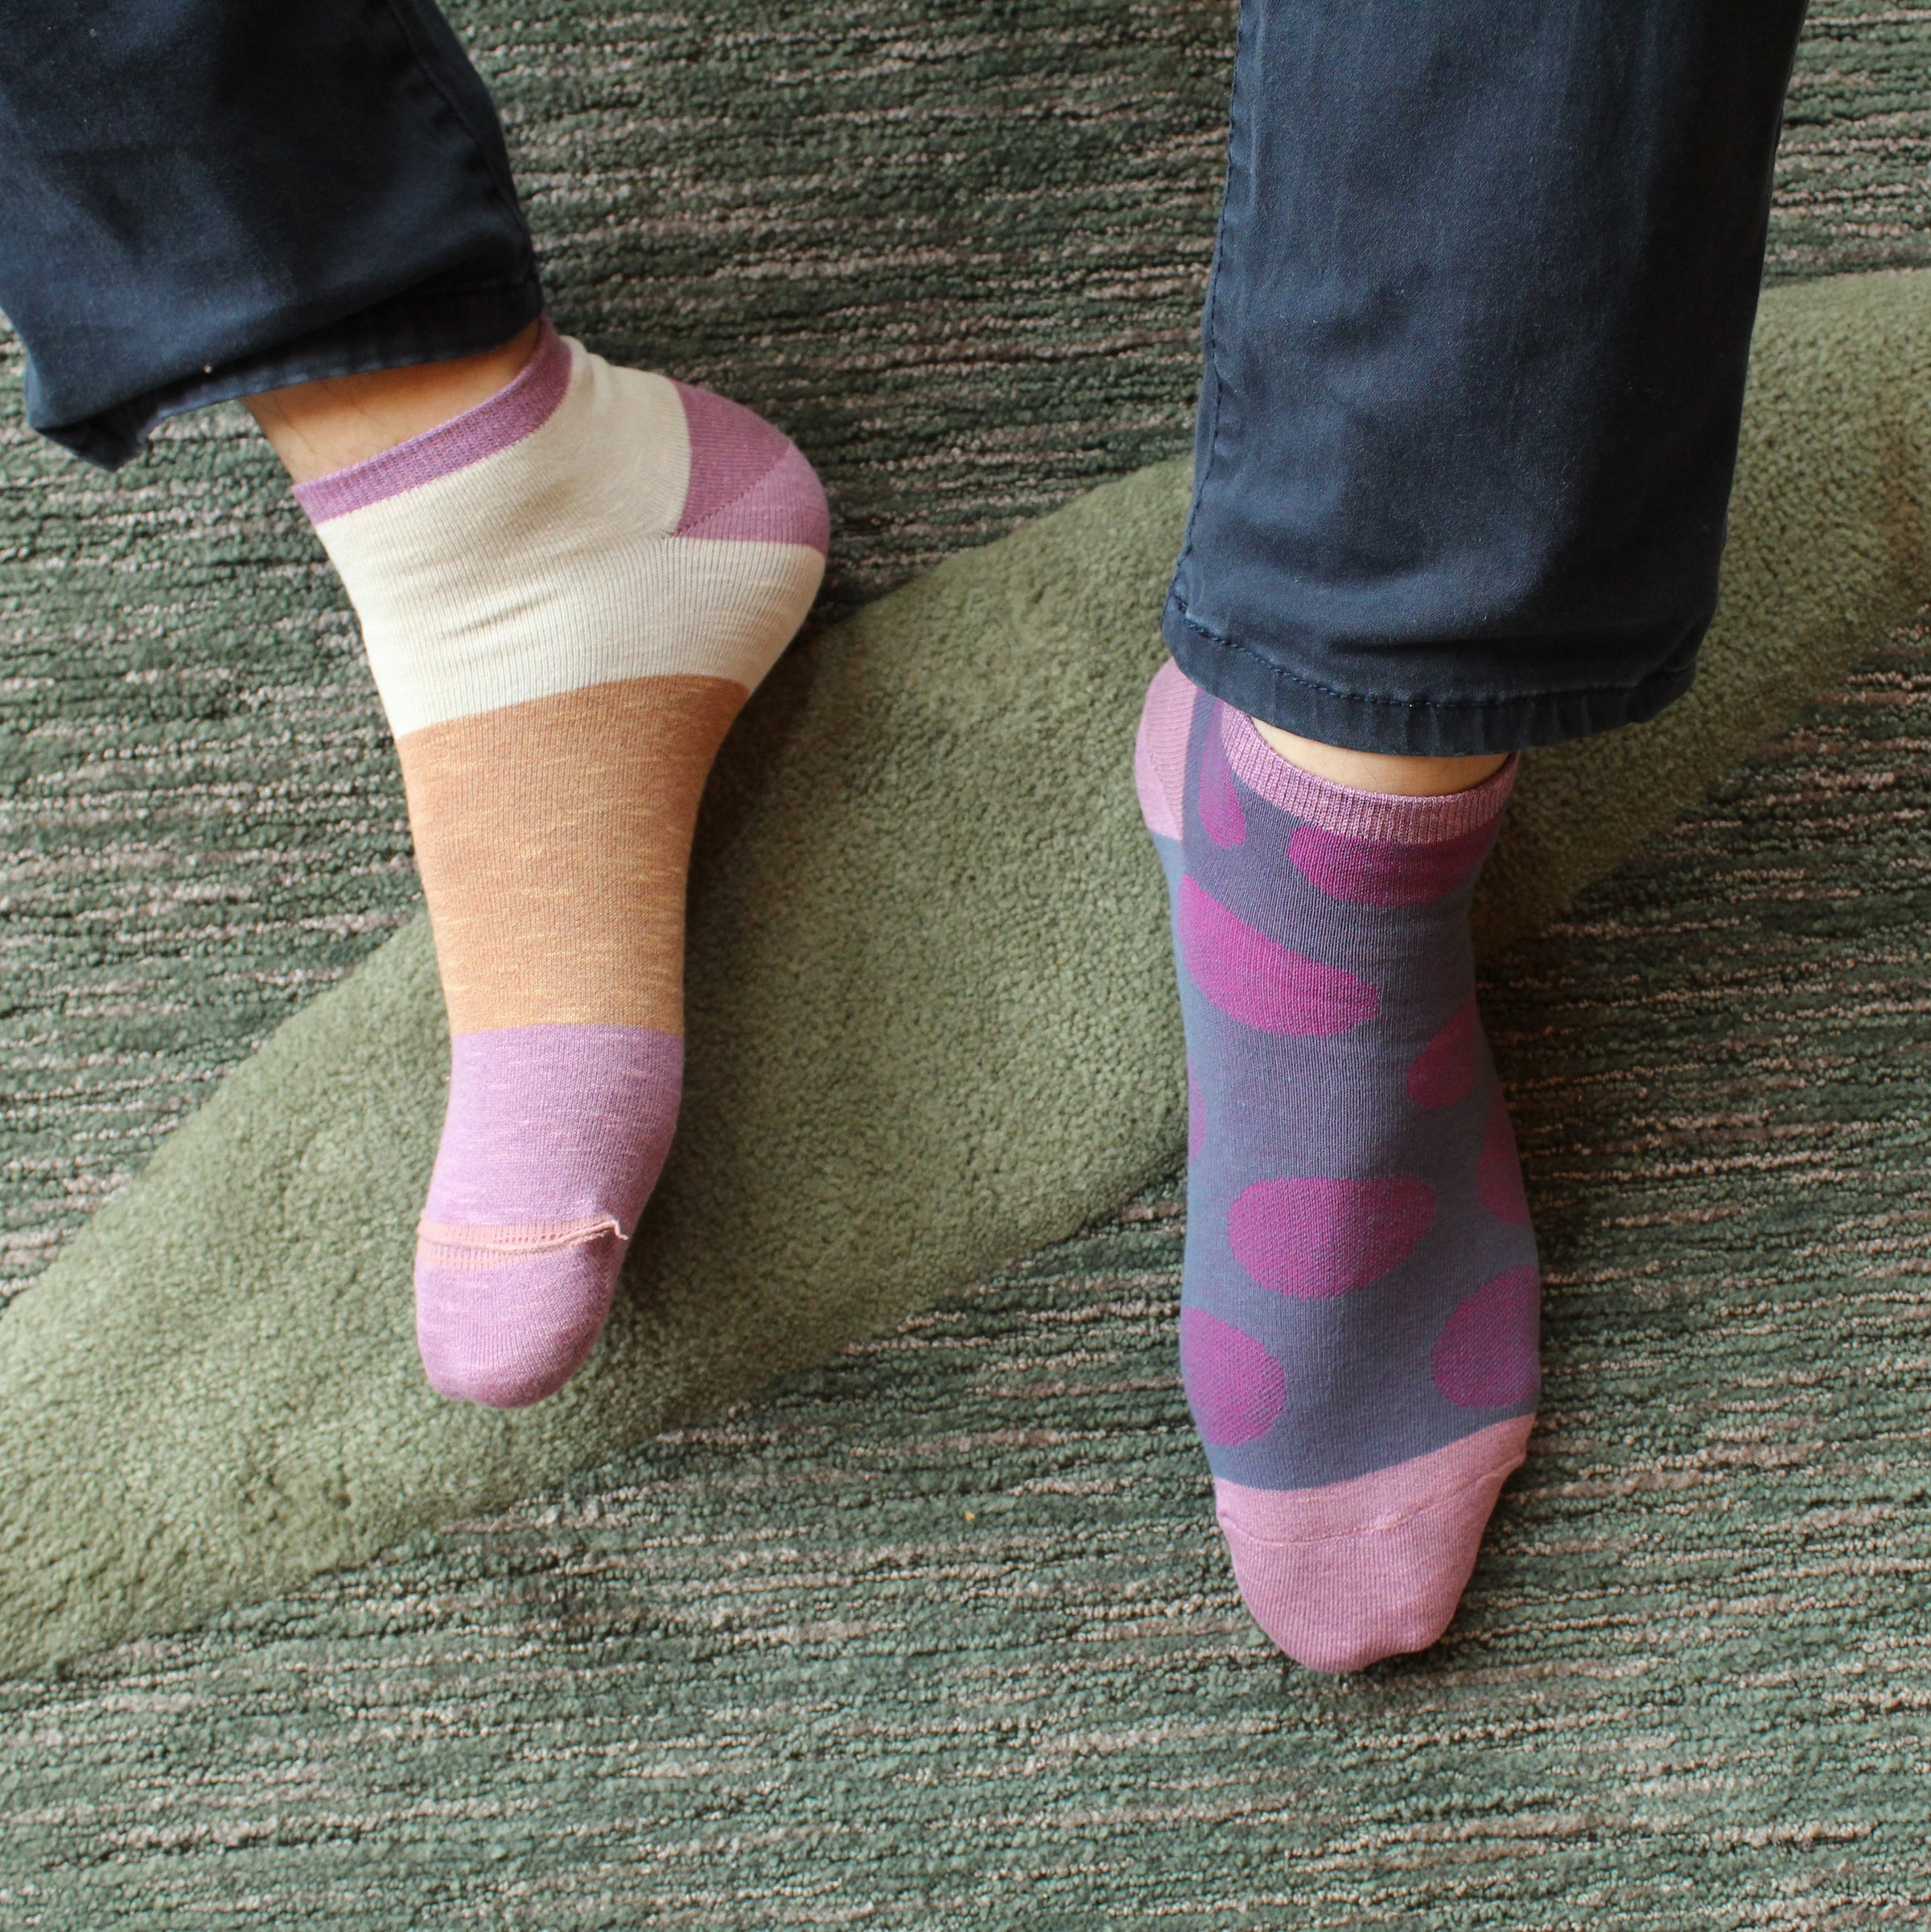 2 in 1 Reversible Socks | Polka Dot Pattern | Light Purple - CHERRYSTONE by MARKET TO JAPAN LLC